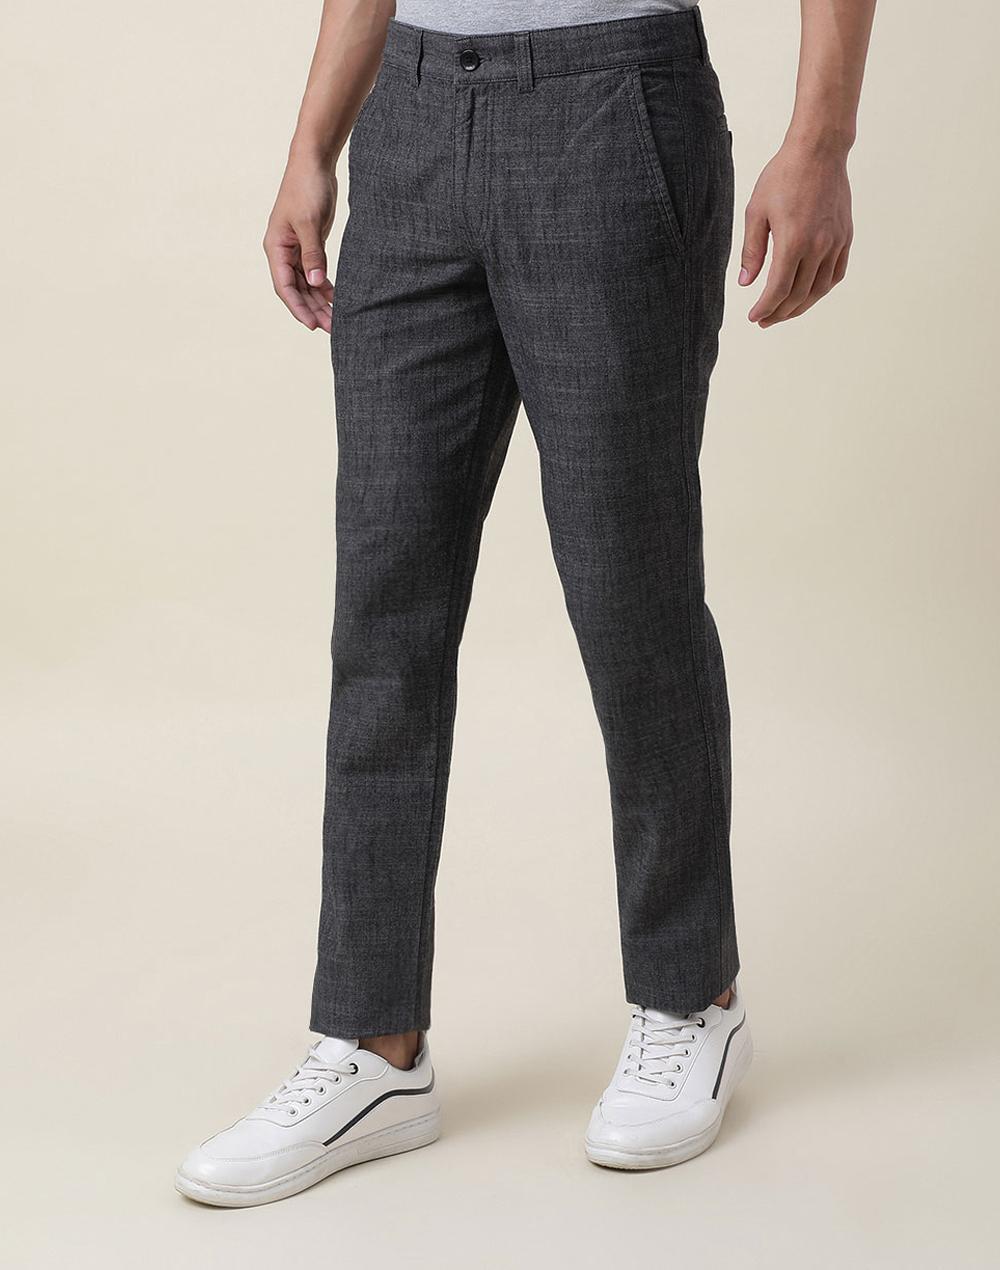 grey cotton slim fit pants